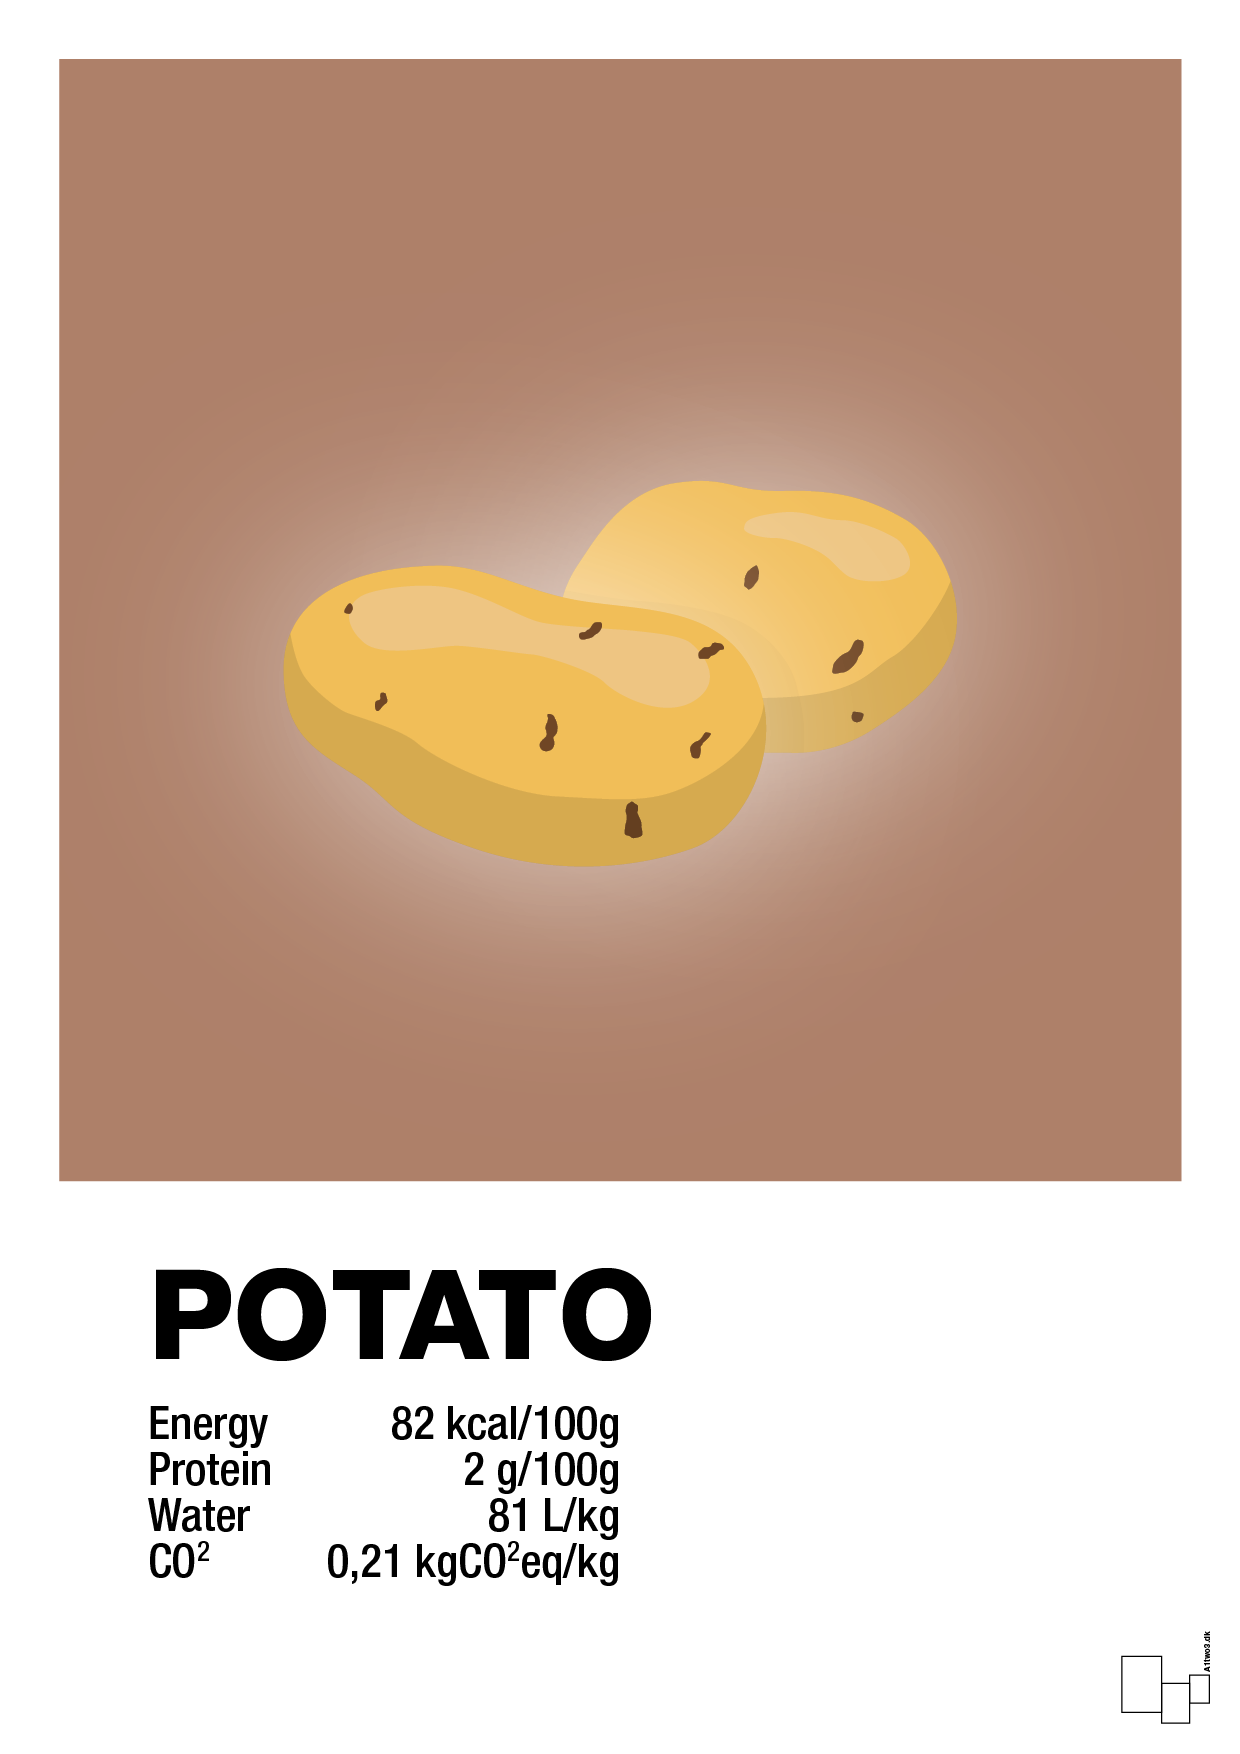 potato nutrition og miljø - Plakat med Mad & Drikke i Cider Spice